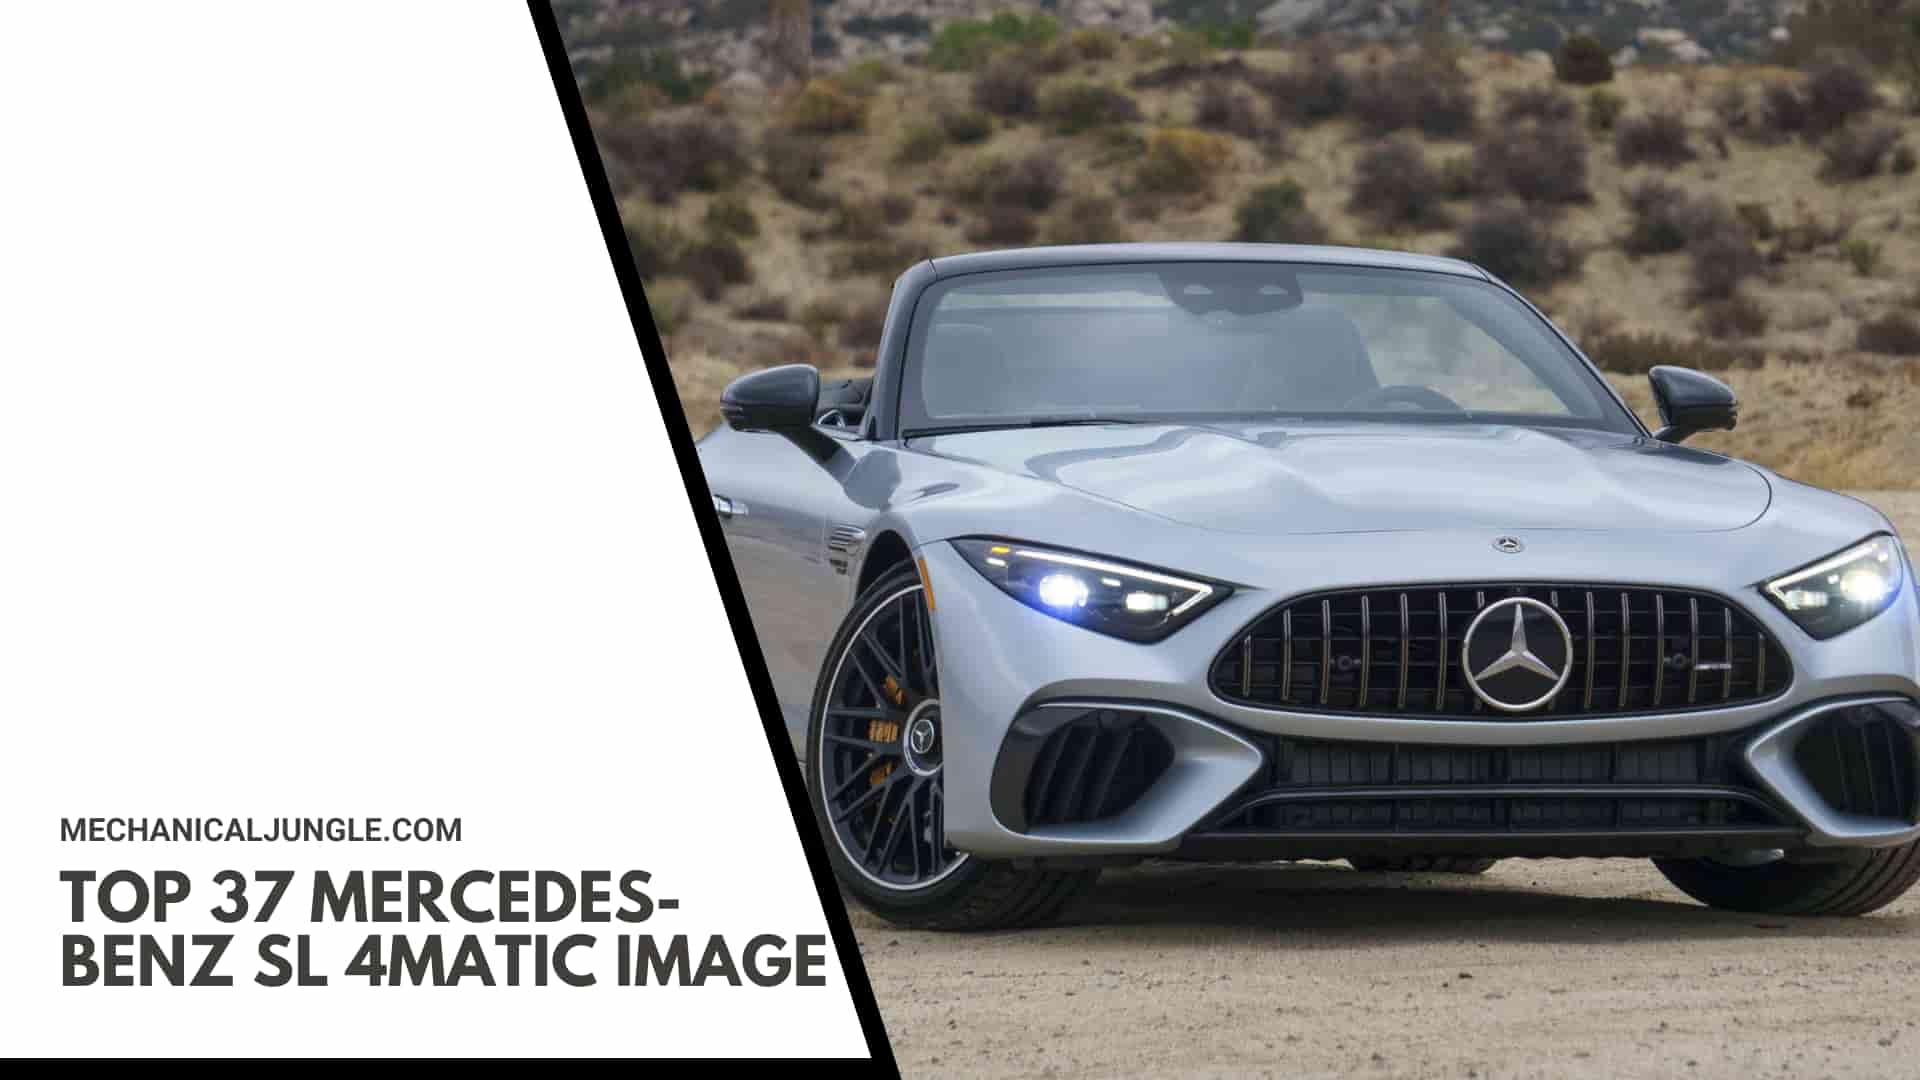 Top 37 Mercedes-Benz SL 4MATIC Image